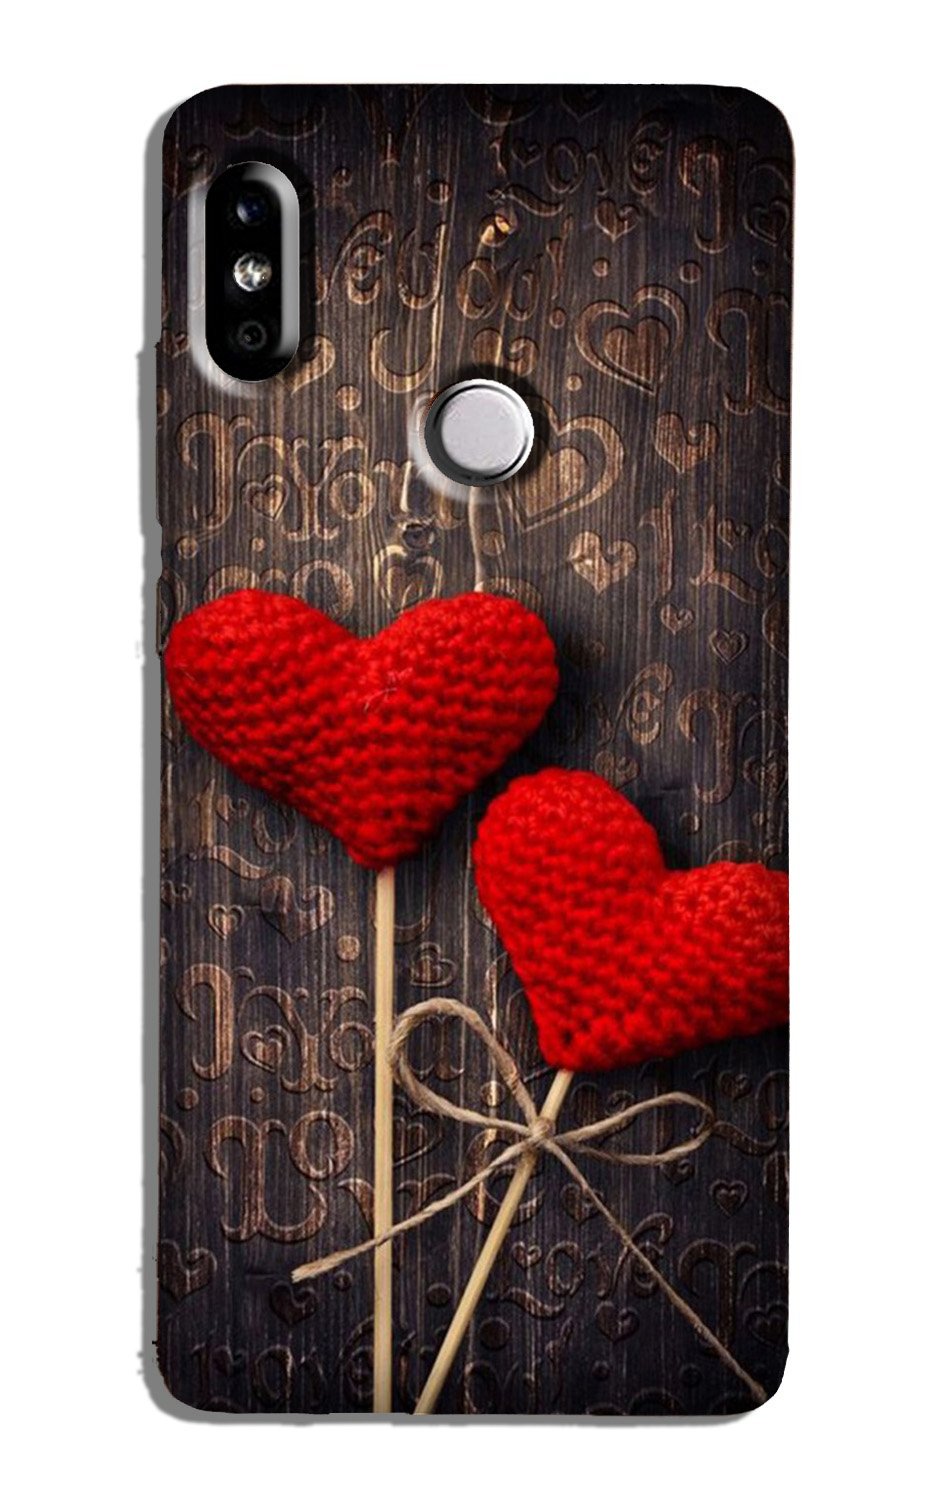 Red Hearts Case for Xiaomi Redmi 7